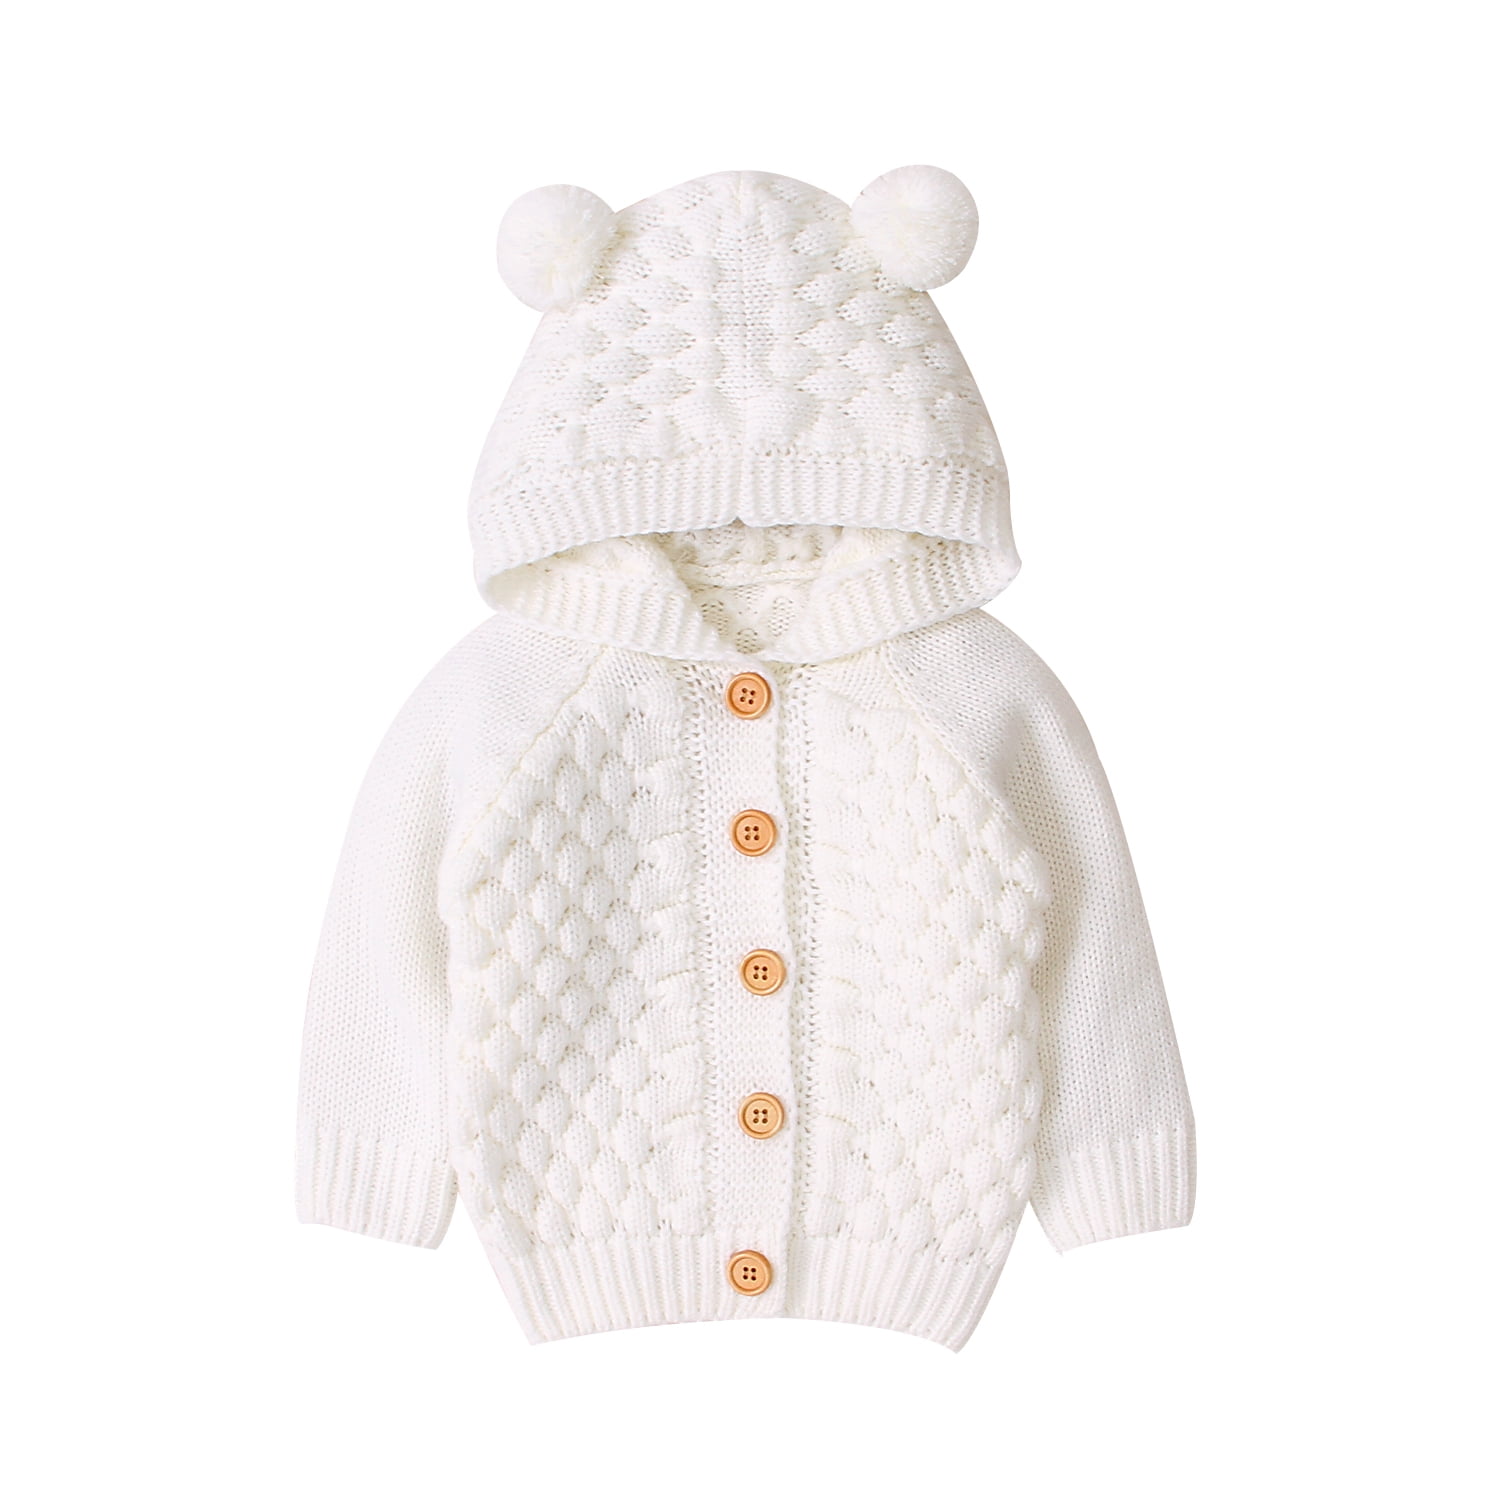 Autumn Newborn Infant Girl Hooded Coat Warm Cardigan Jacket Outerwear Long Sleeve Knitwear Kids Winter Sweater